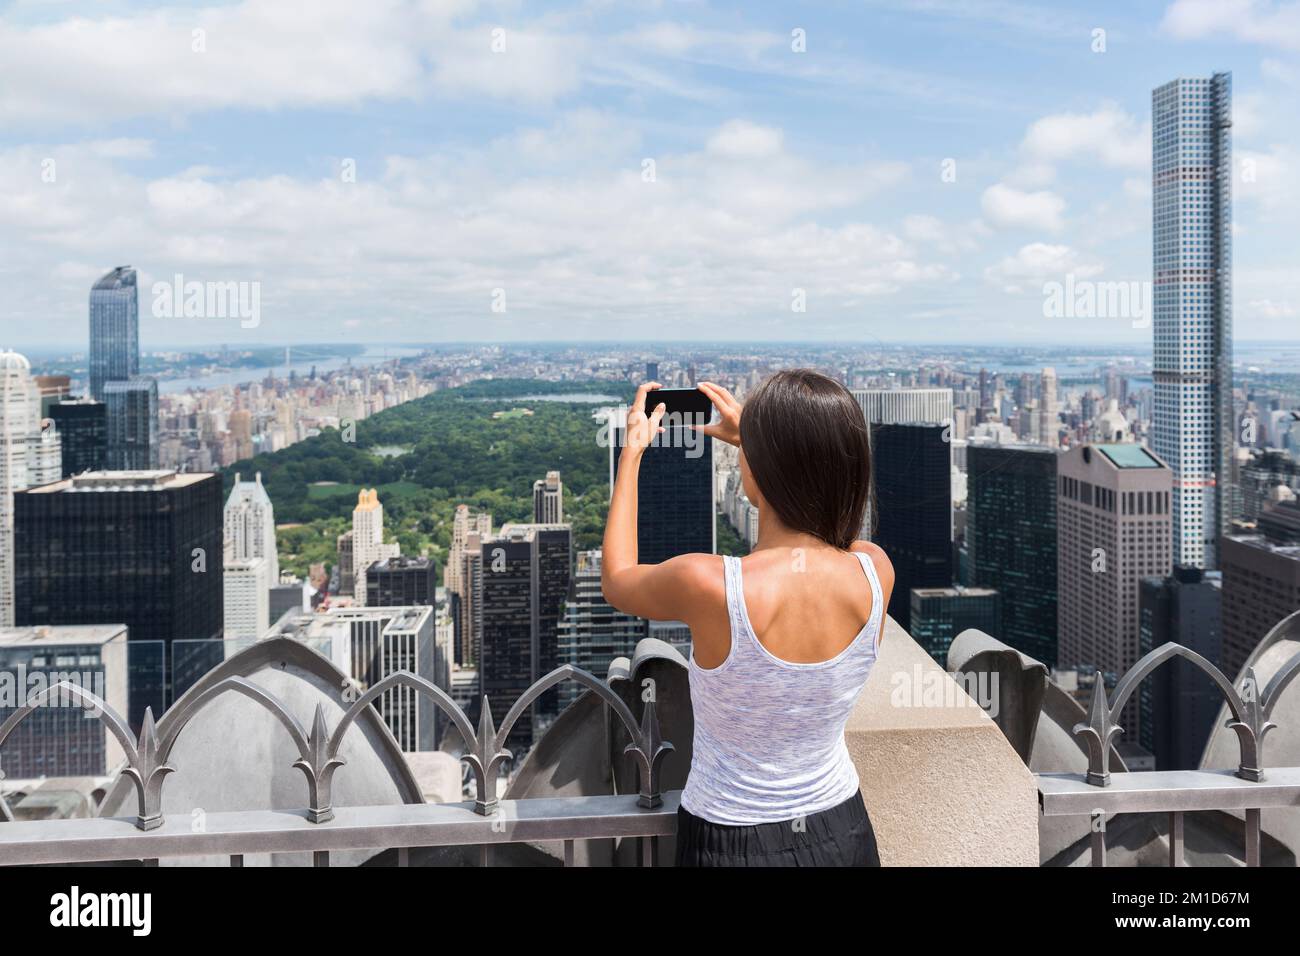 USA-Tourist in New York City Urlaub - eine Frau, die einen Blick auf die Skyline wirft und Fotos mit dem Handy von einem Wolkenkratzer macht. Ein Mädchen, das im Sommer reist Stockfoto